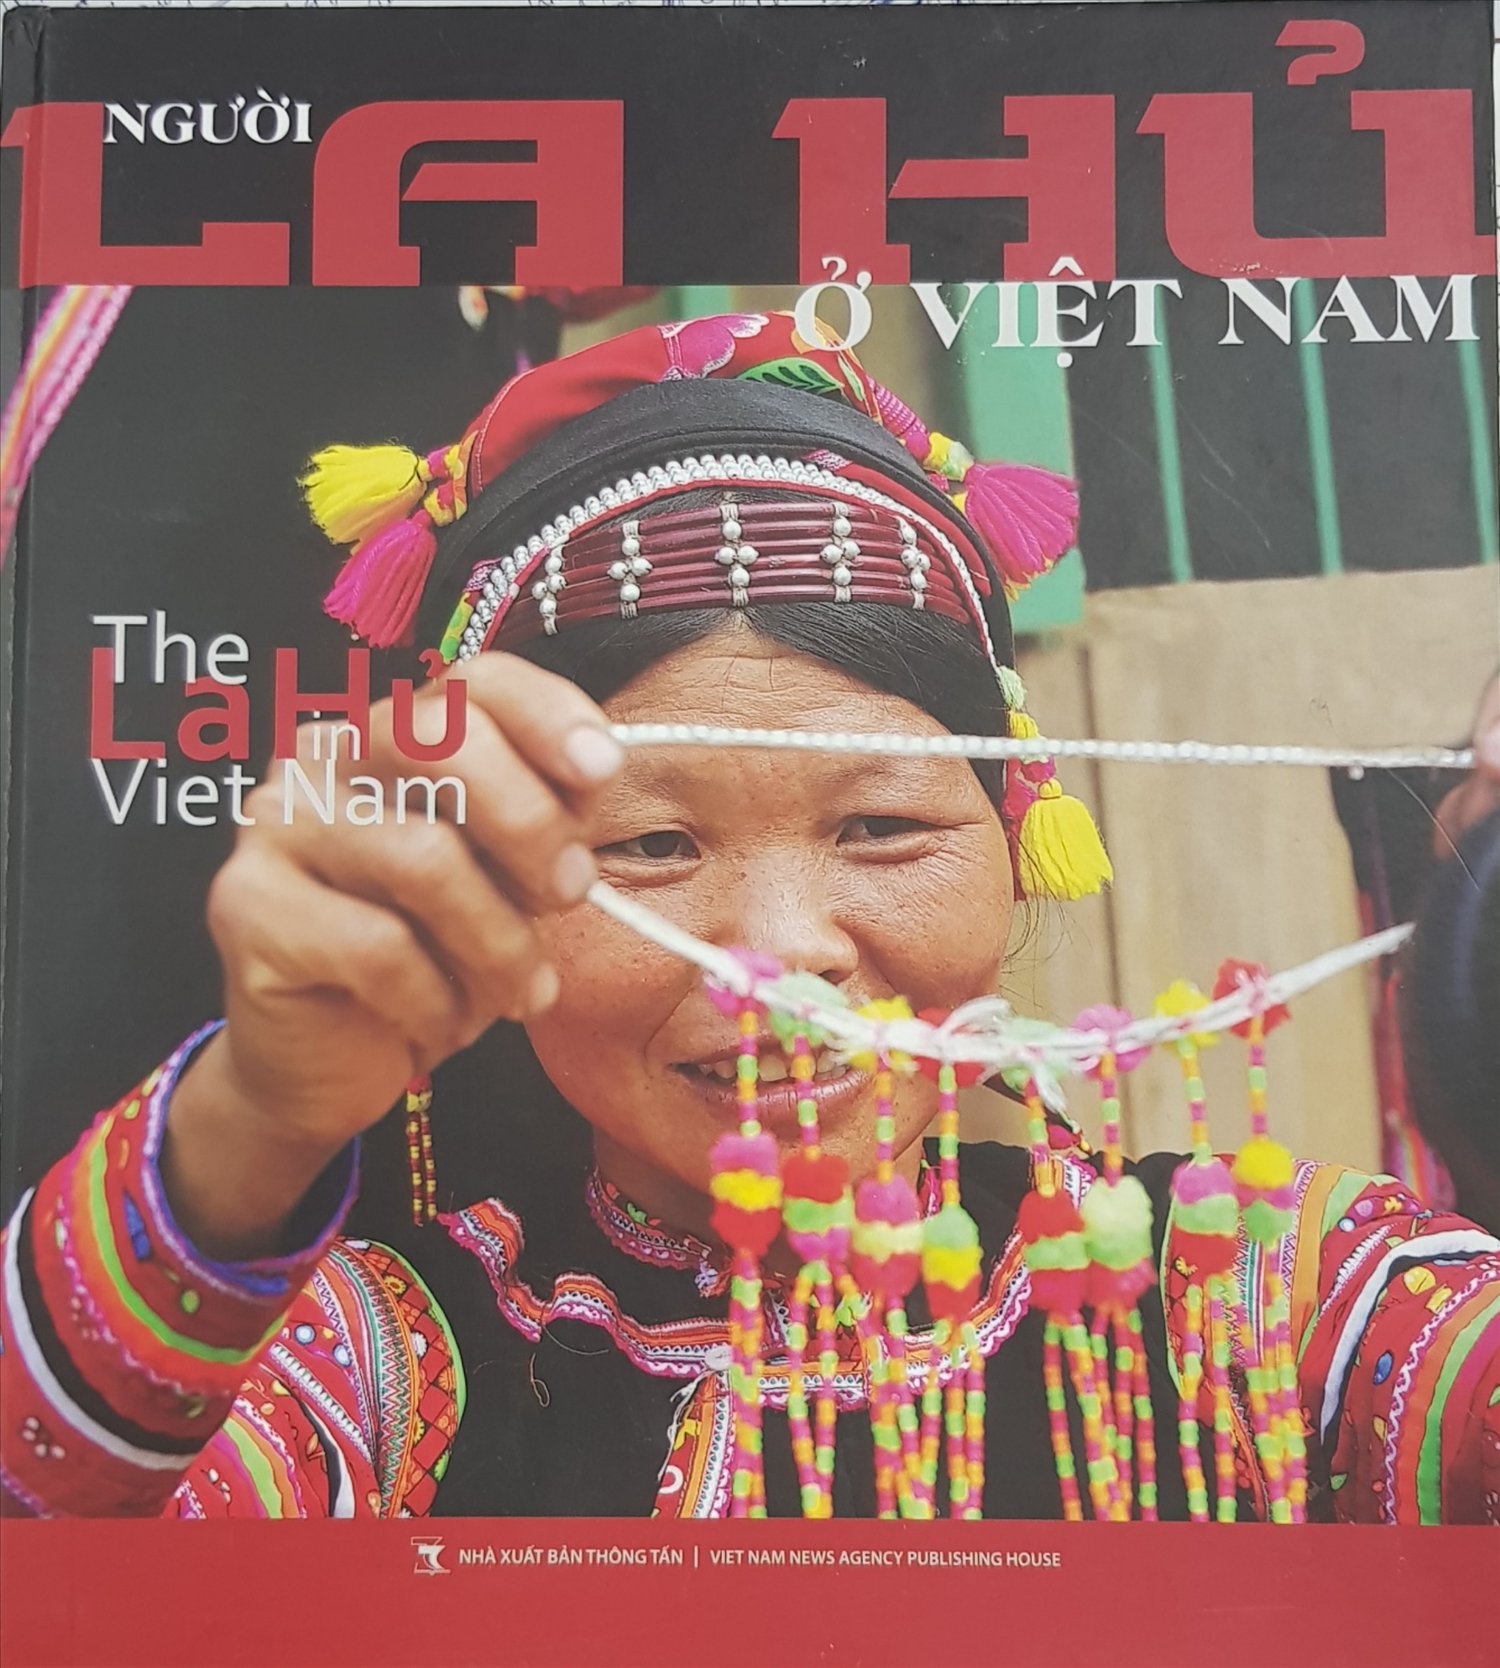 Bìa cuốn sách "Người La Hủ ở Việt Nam"